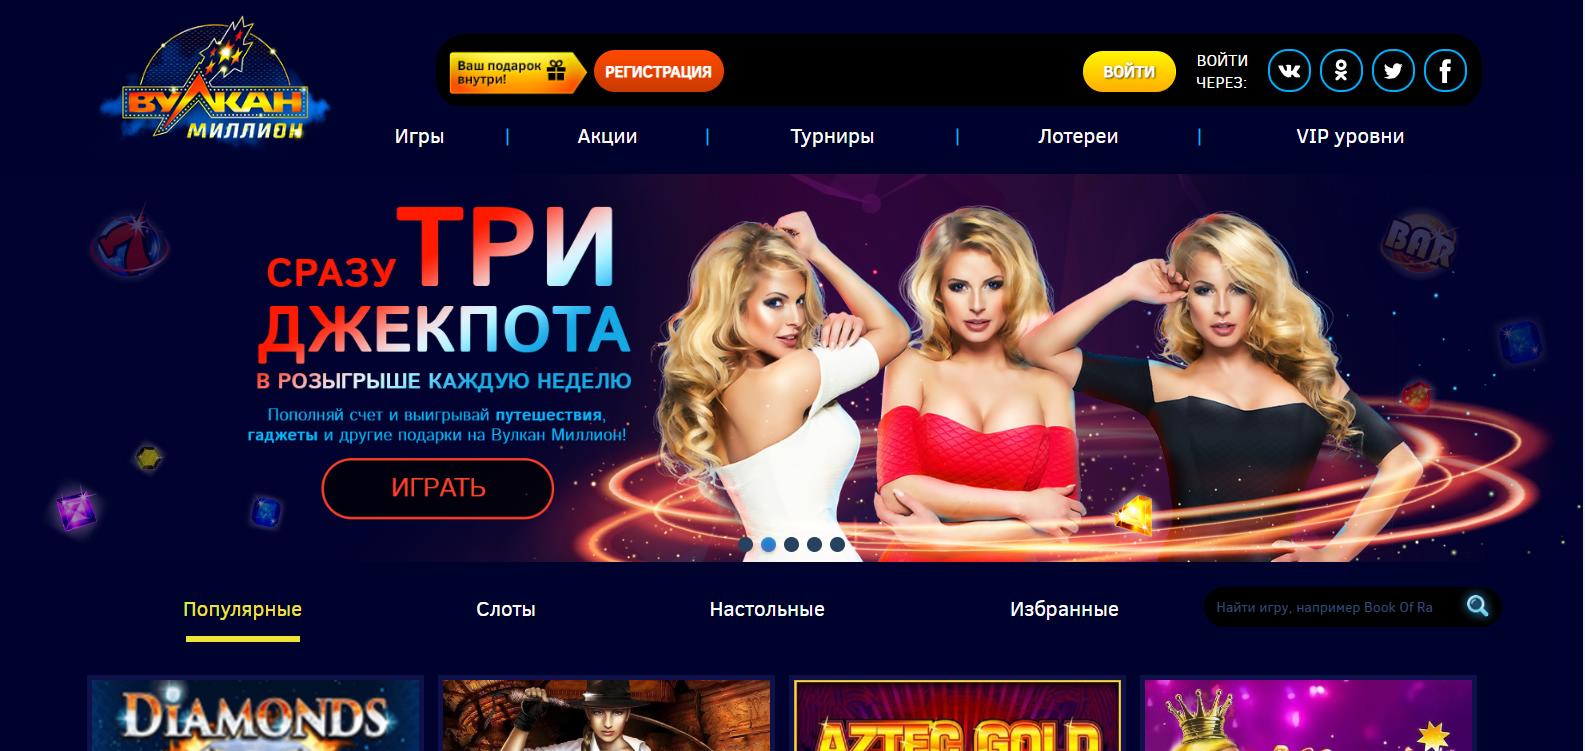 Казино вулкан миллион бездепозитный бонус 1000 win ru официальный сайт покердом pokerdom